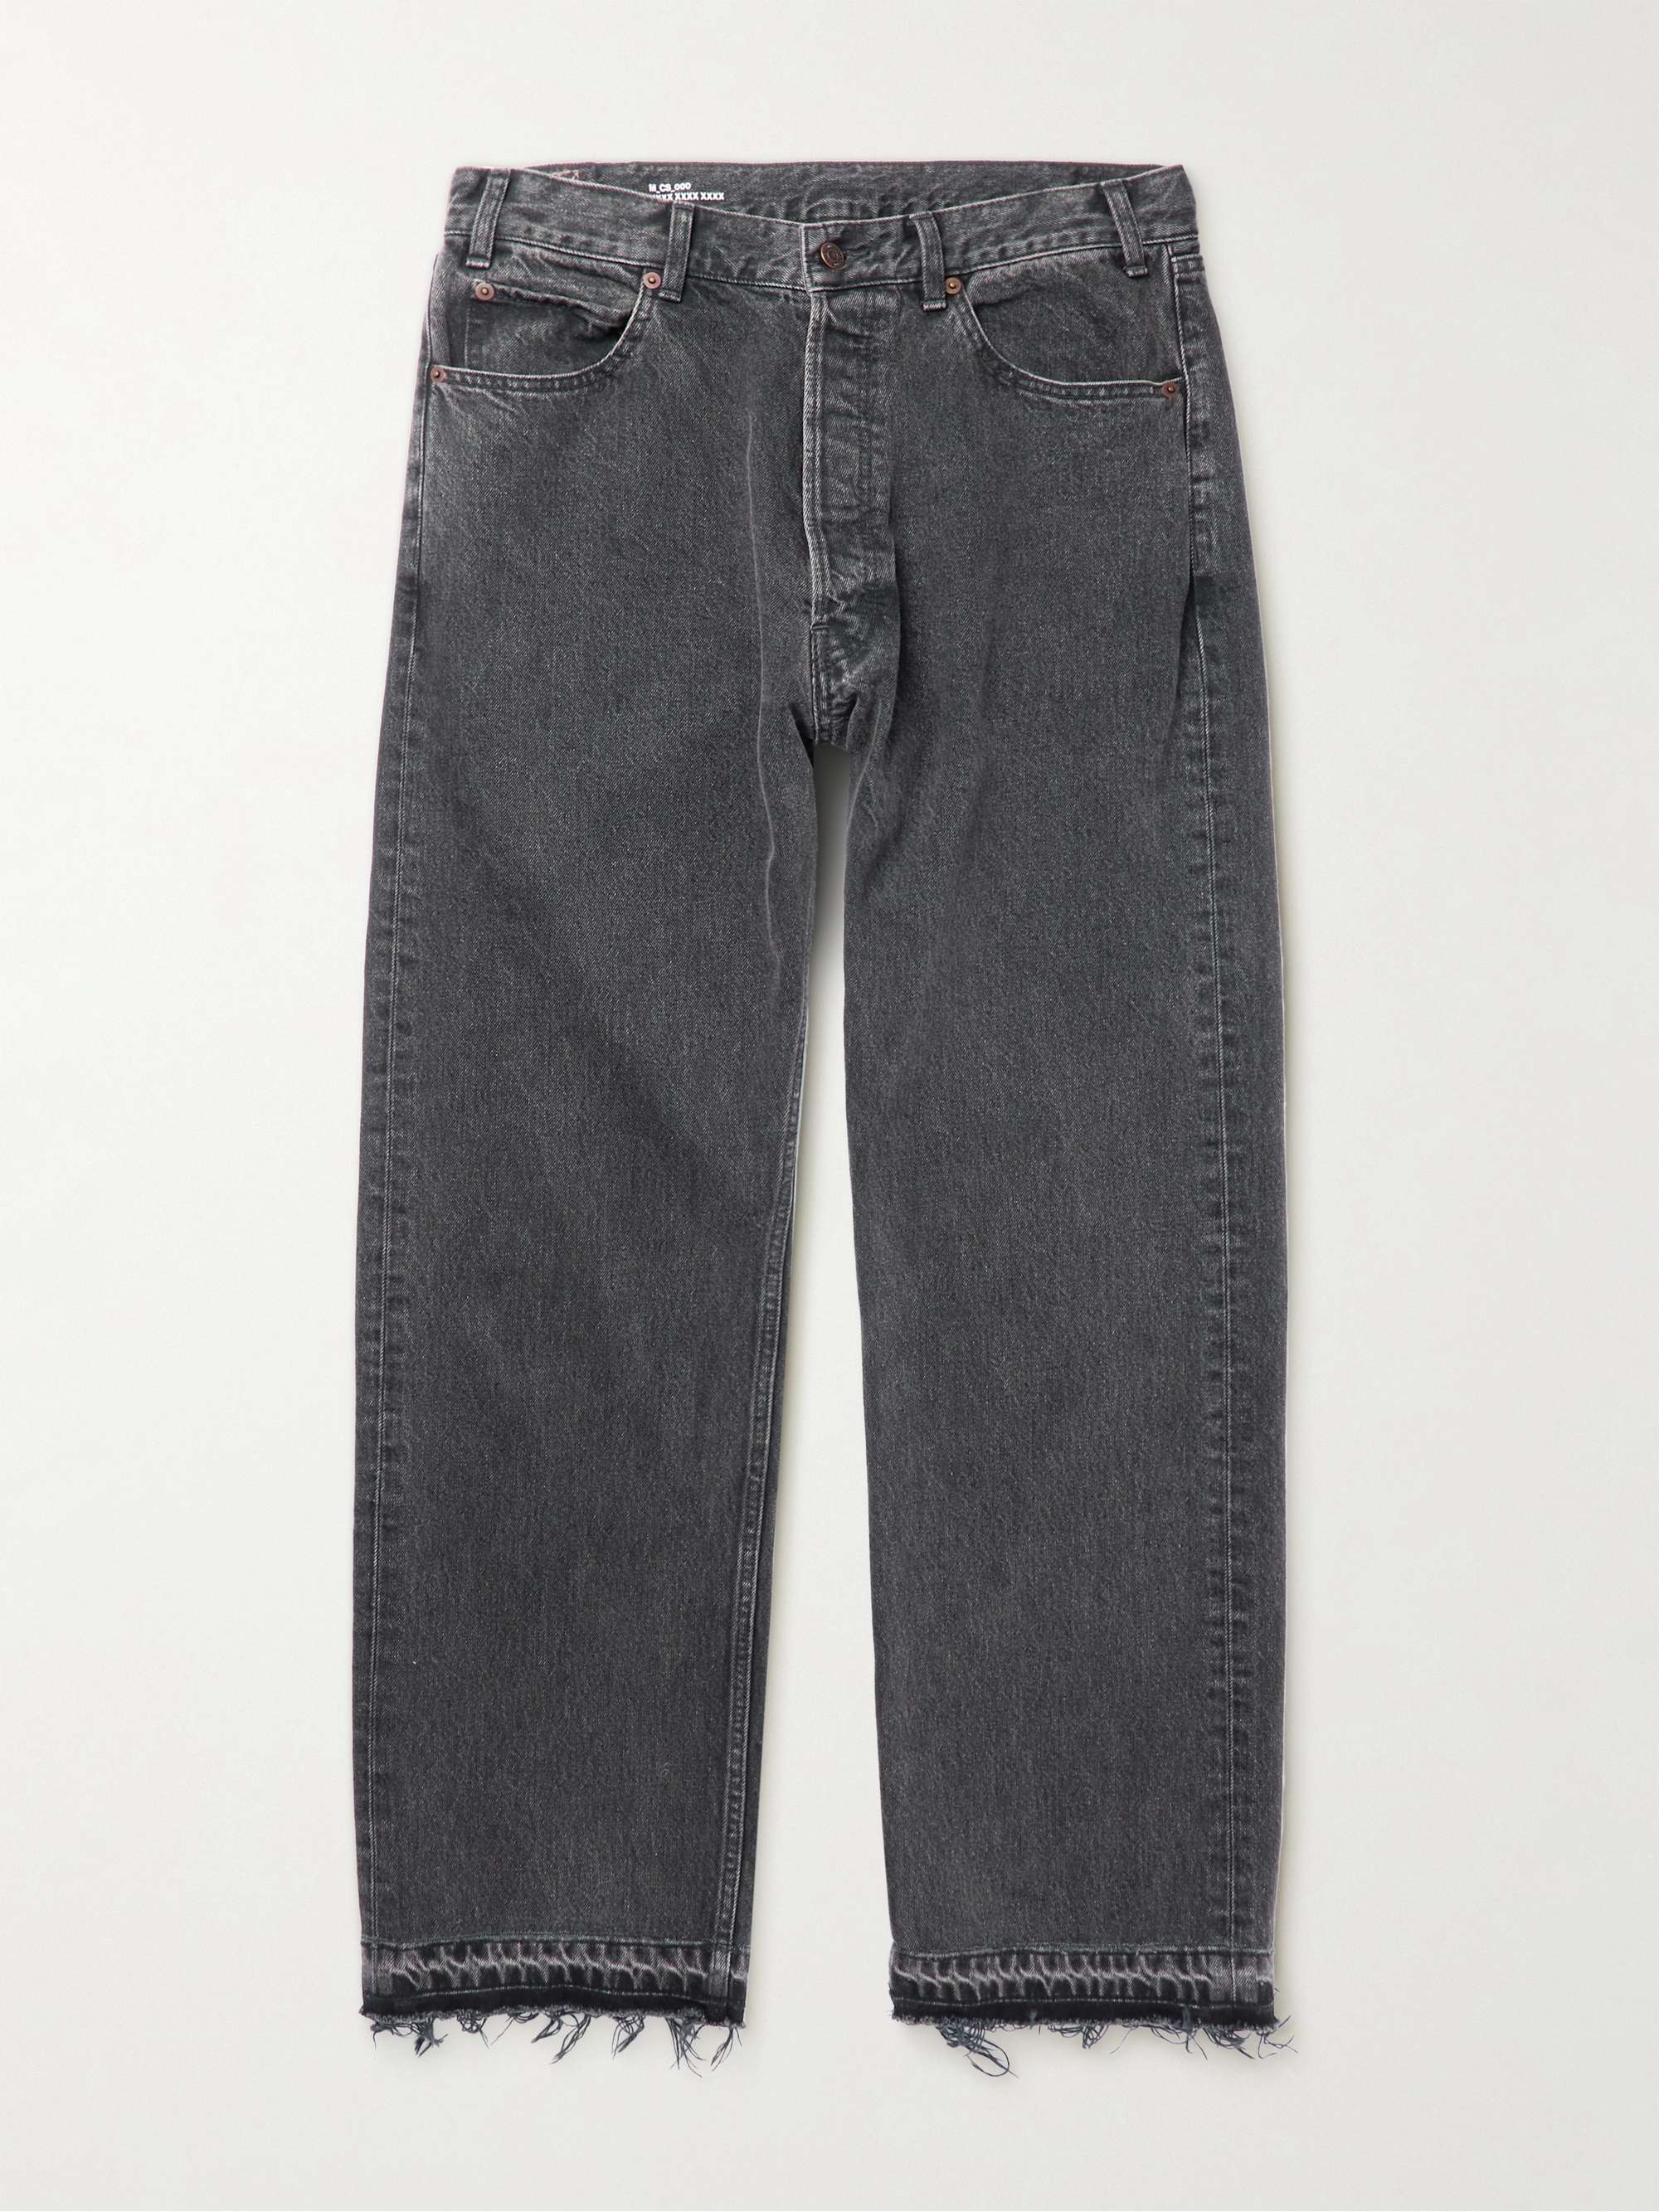 CELINE HOMME Frayed Straight-Leg Jeans for Men | MR PORTER